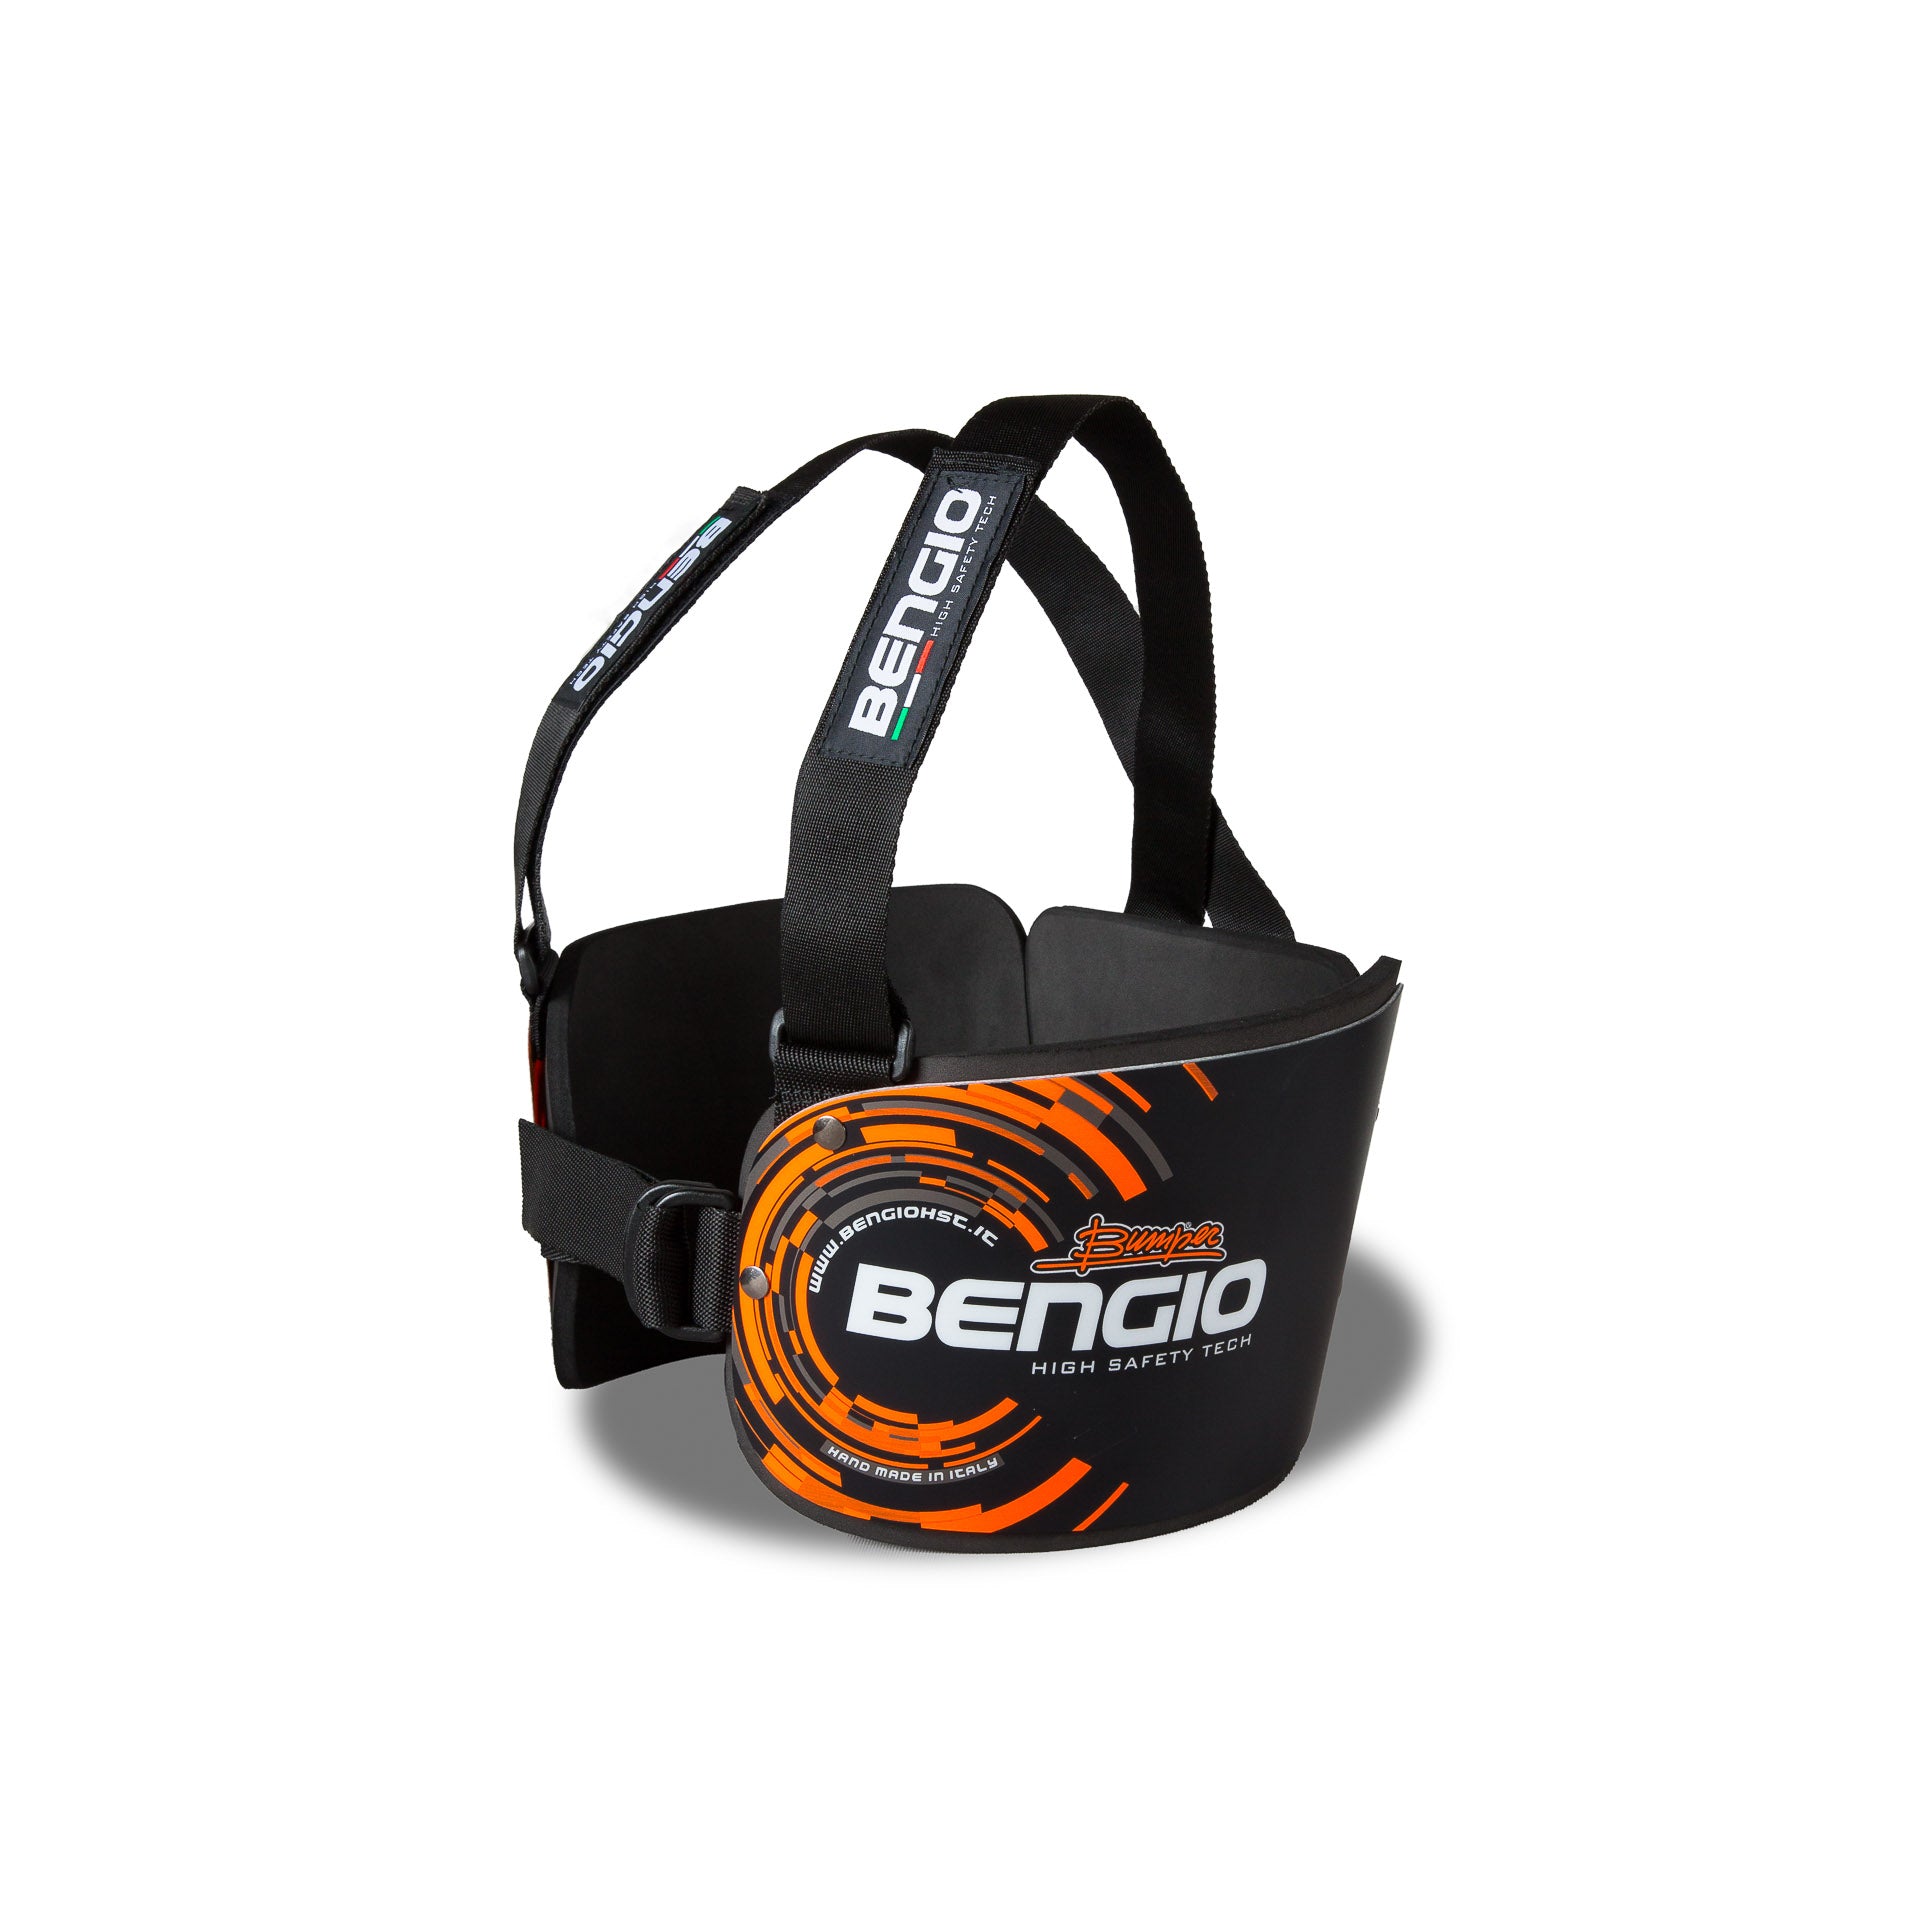 BENGIO STDLBO BUMPER Standard Захист ребер для картингу, чорний/помаранчевий, розмір L Photo-1 